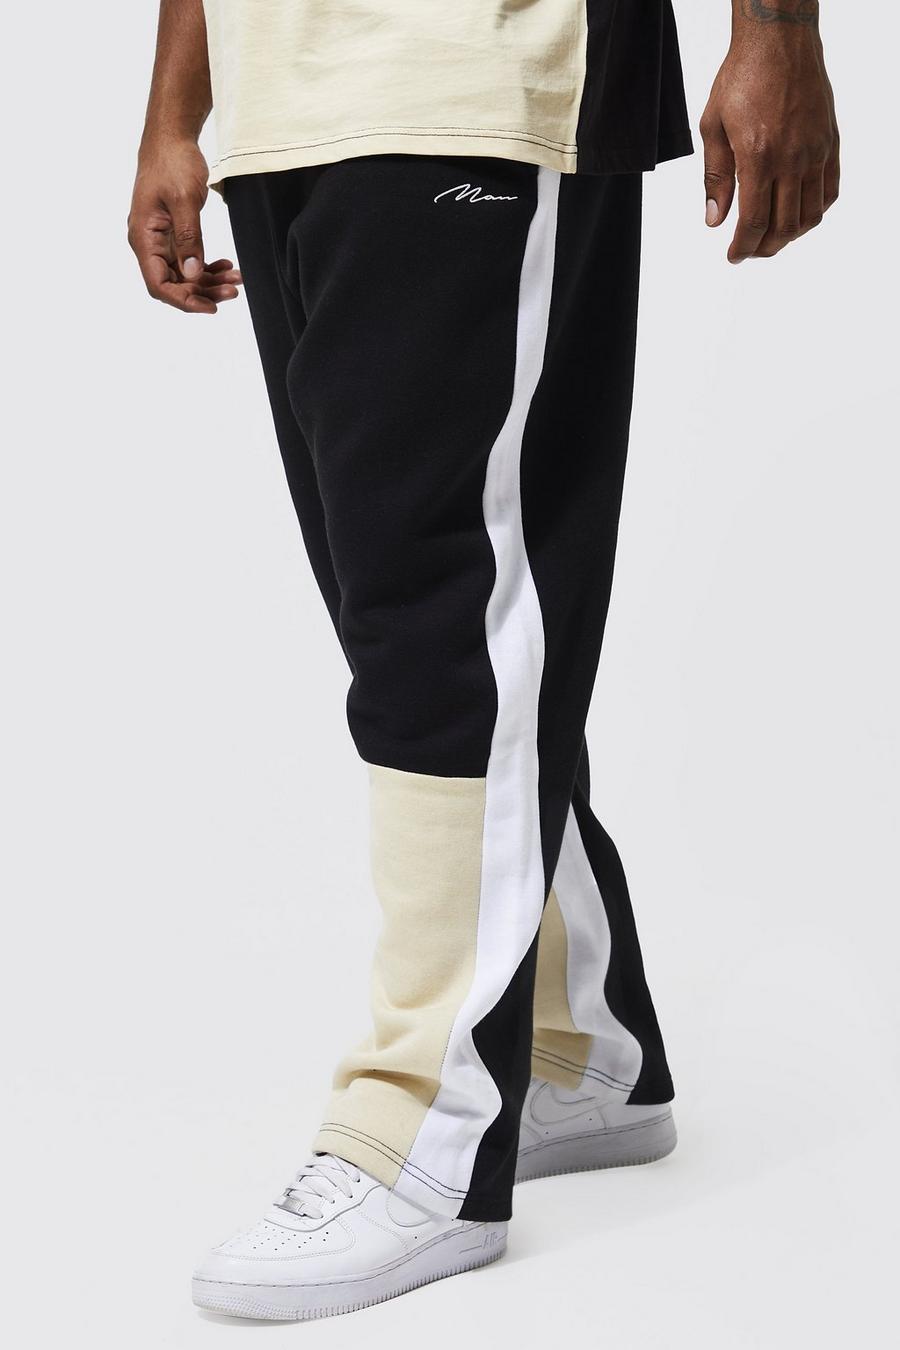 Pantaloni tuta Man Plus Size a gamba ampia a blocchi di colore, Black nero